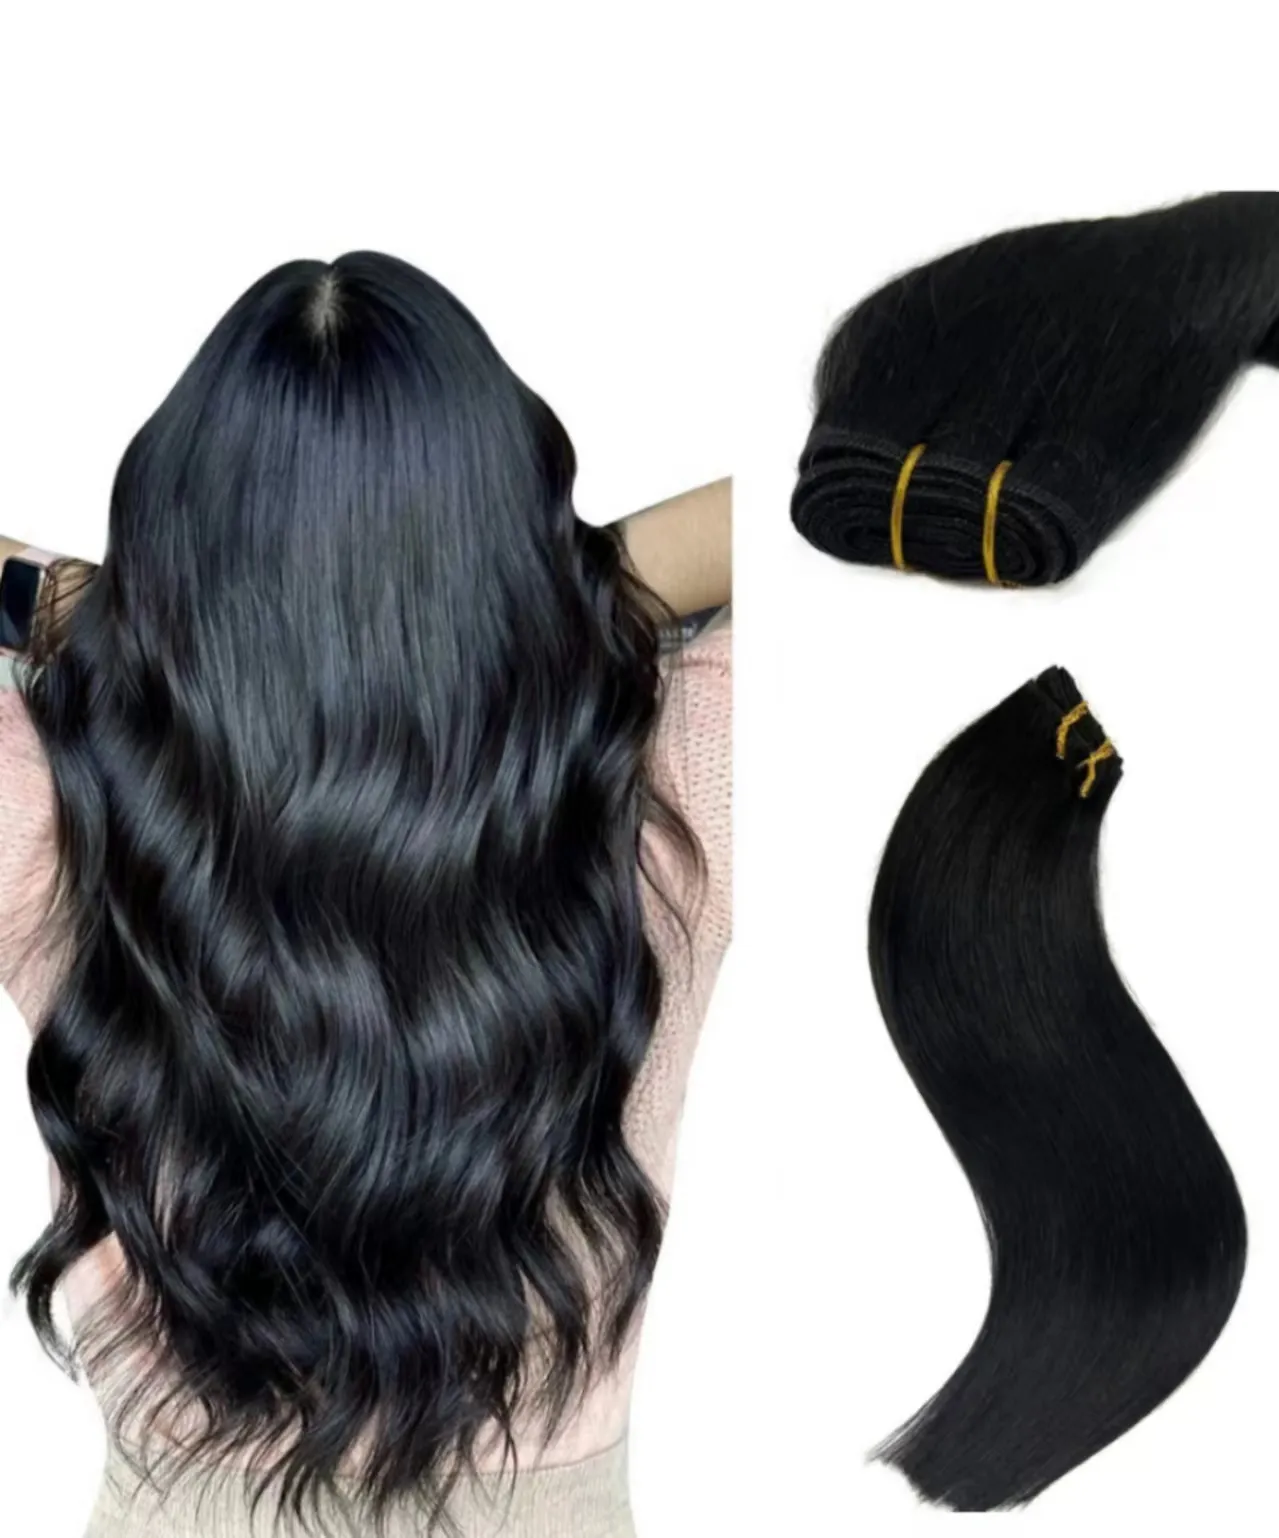 100% 自然な生の人間の髪の毛の延長、ベトナム製のスタイルの長波キューティクル整列バージンヘア織りバンドル